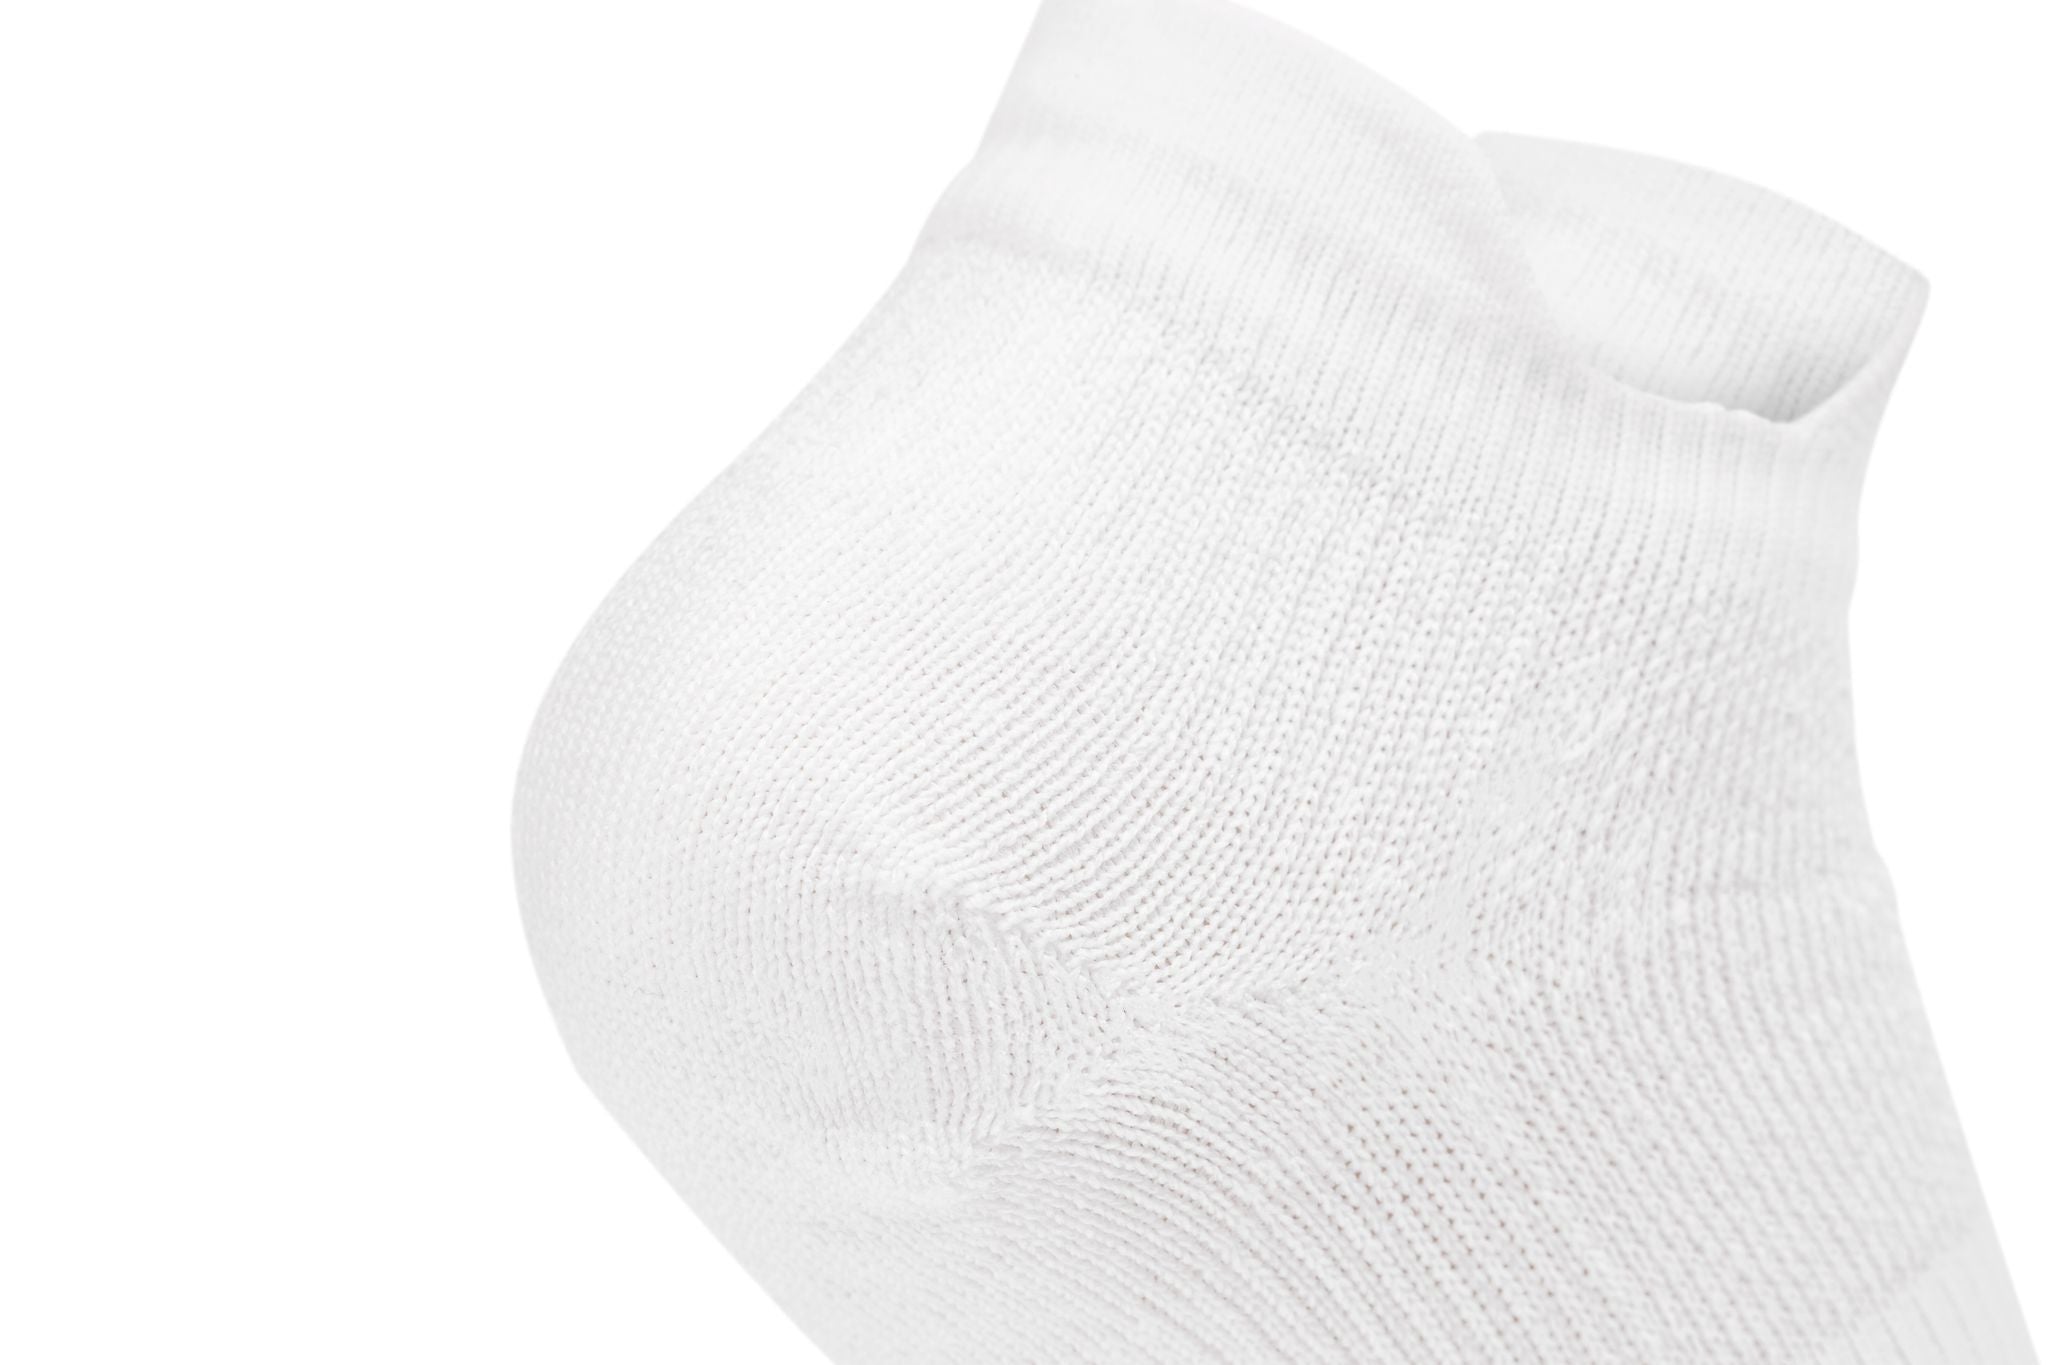 Teqnigrip Crew Sock / White - Grip Socks for Soccer, Lacrosse, Sport